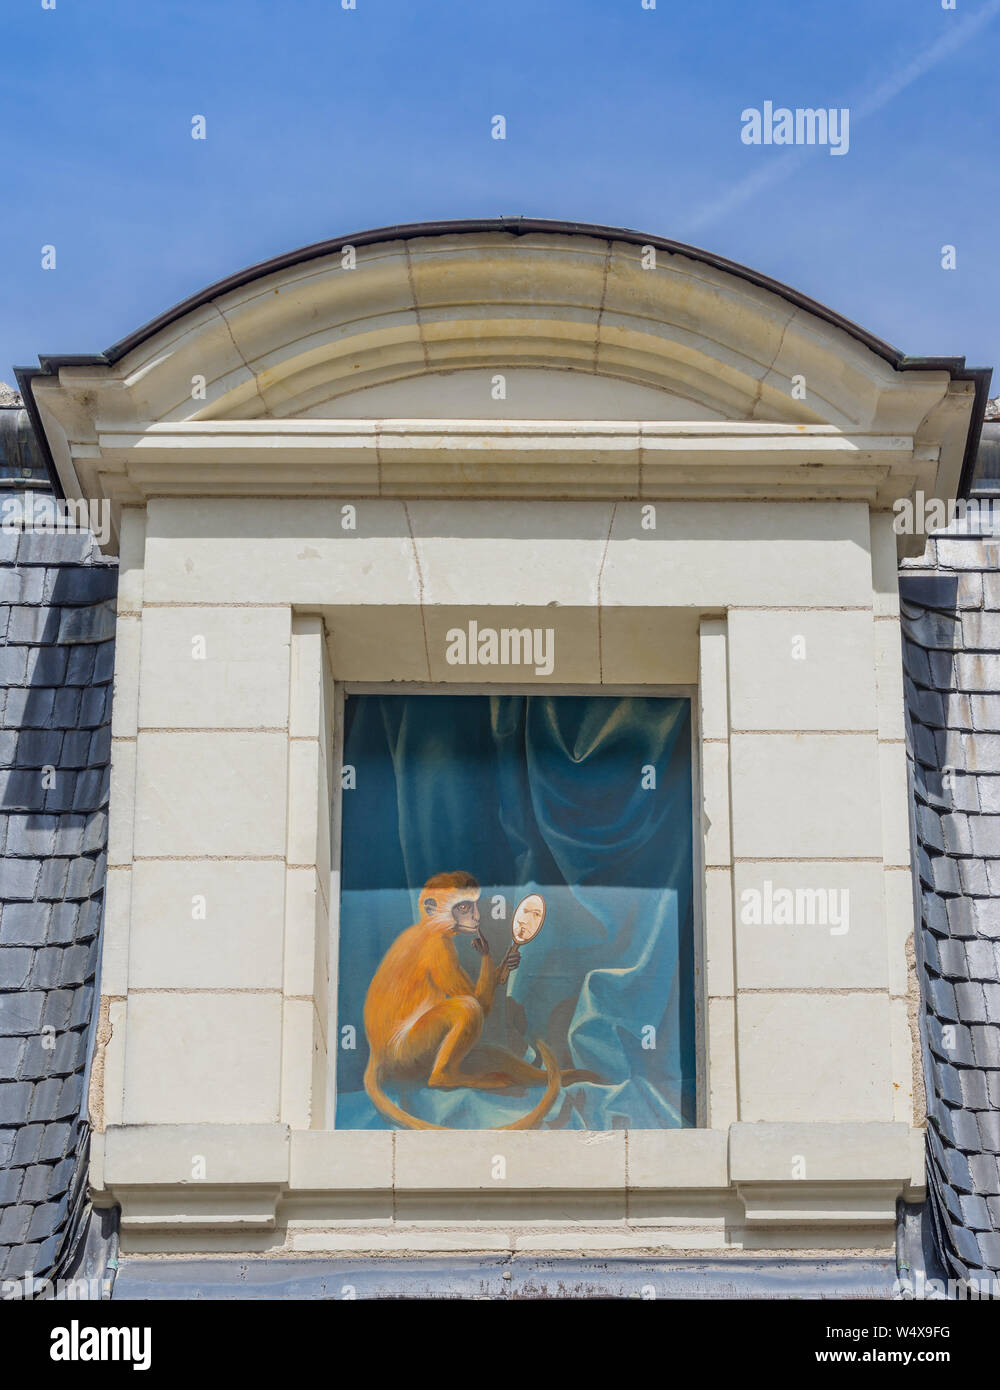 Peinture de singe et miroir dans fenêtre - Loches, France. Banque D'Images